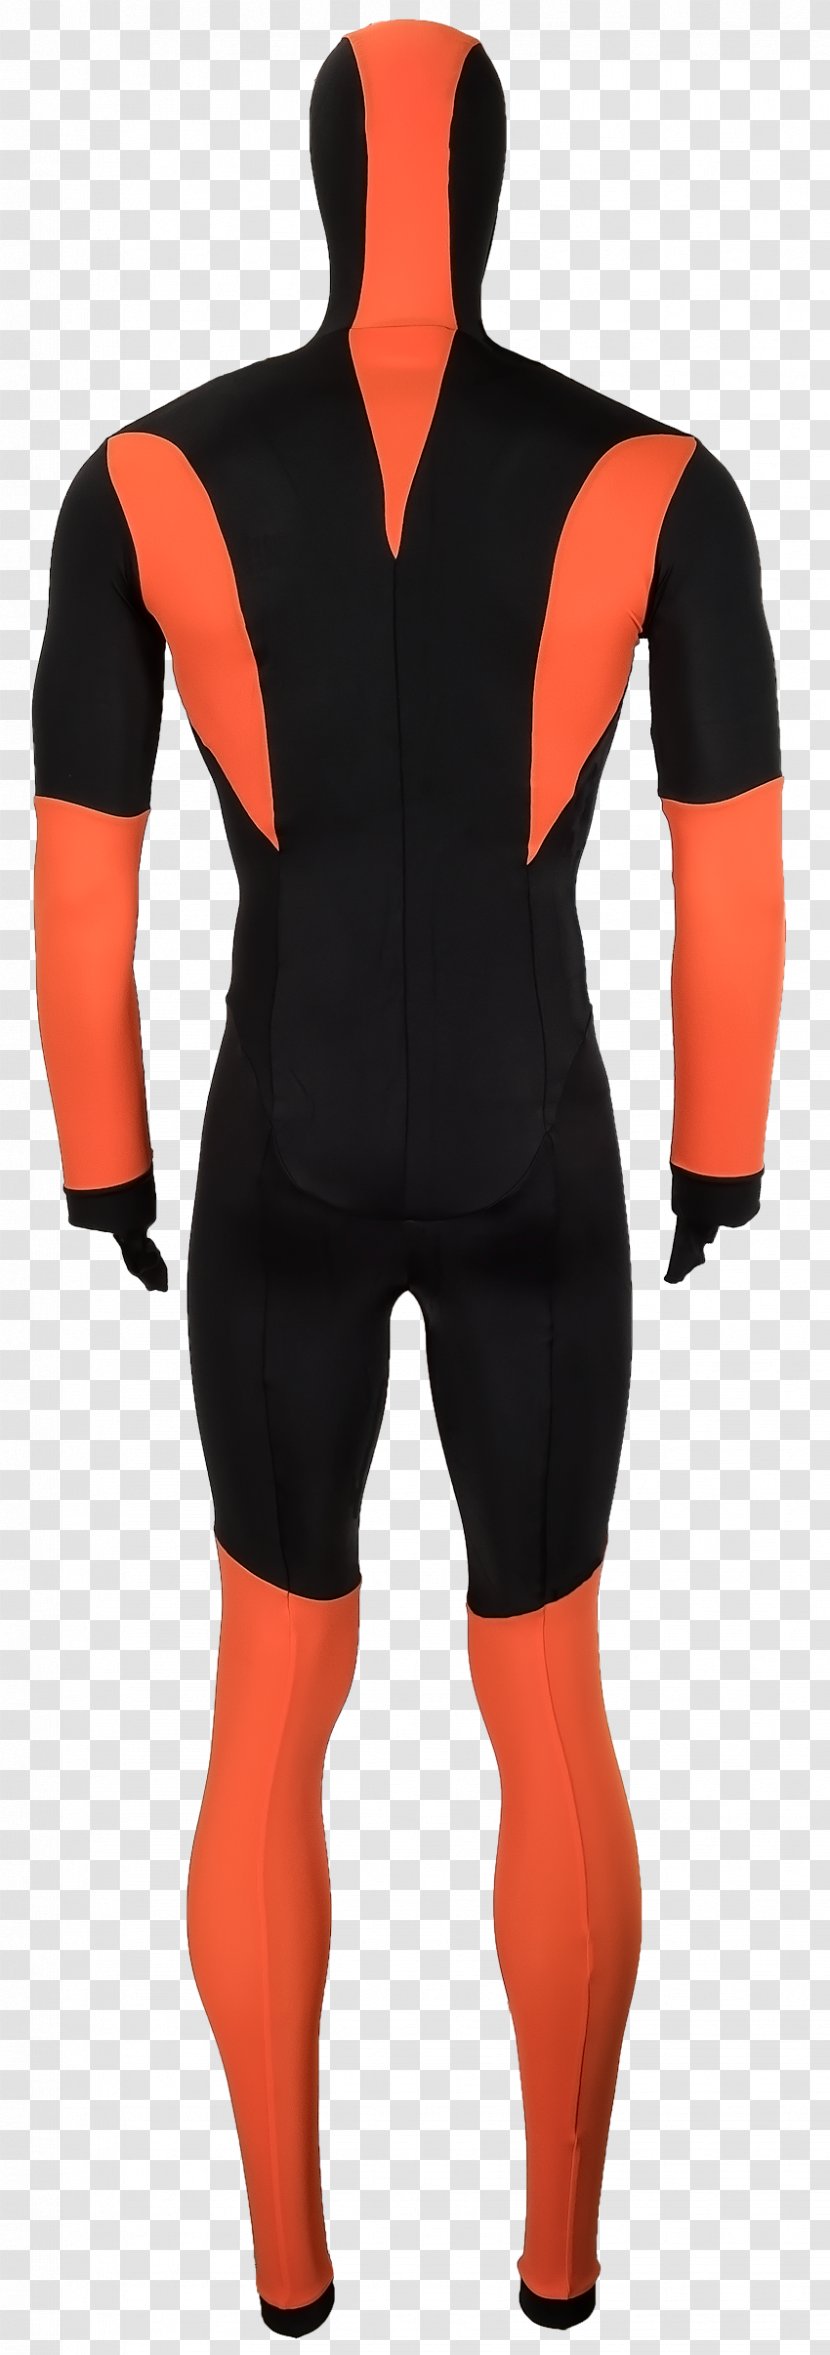 Wetsuit Spandex Shoulder - Costume - Speed Skating Transparent PNG